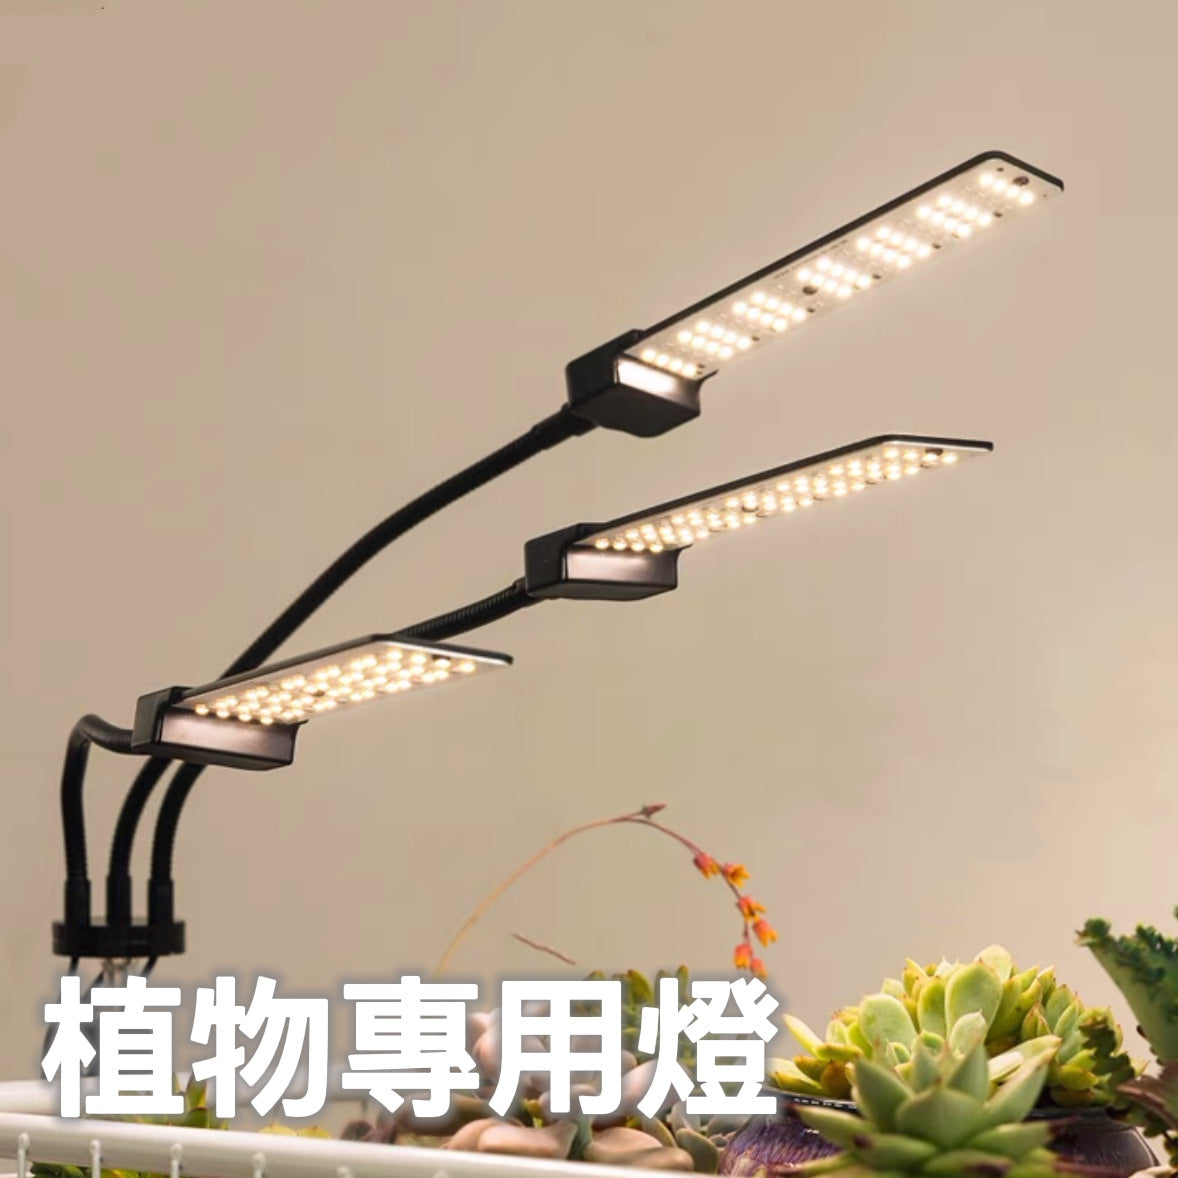 植物專用燈